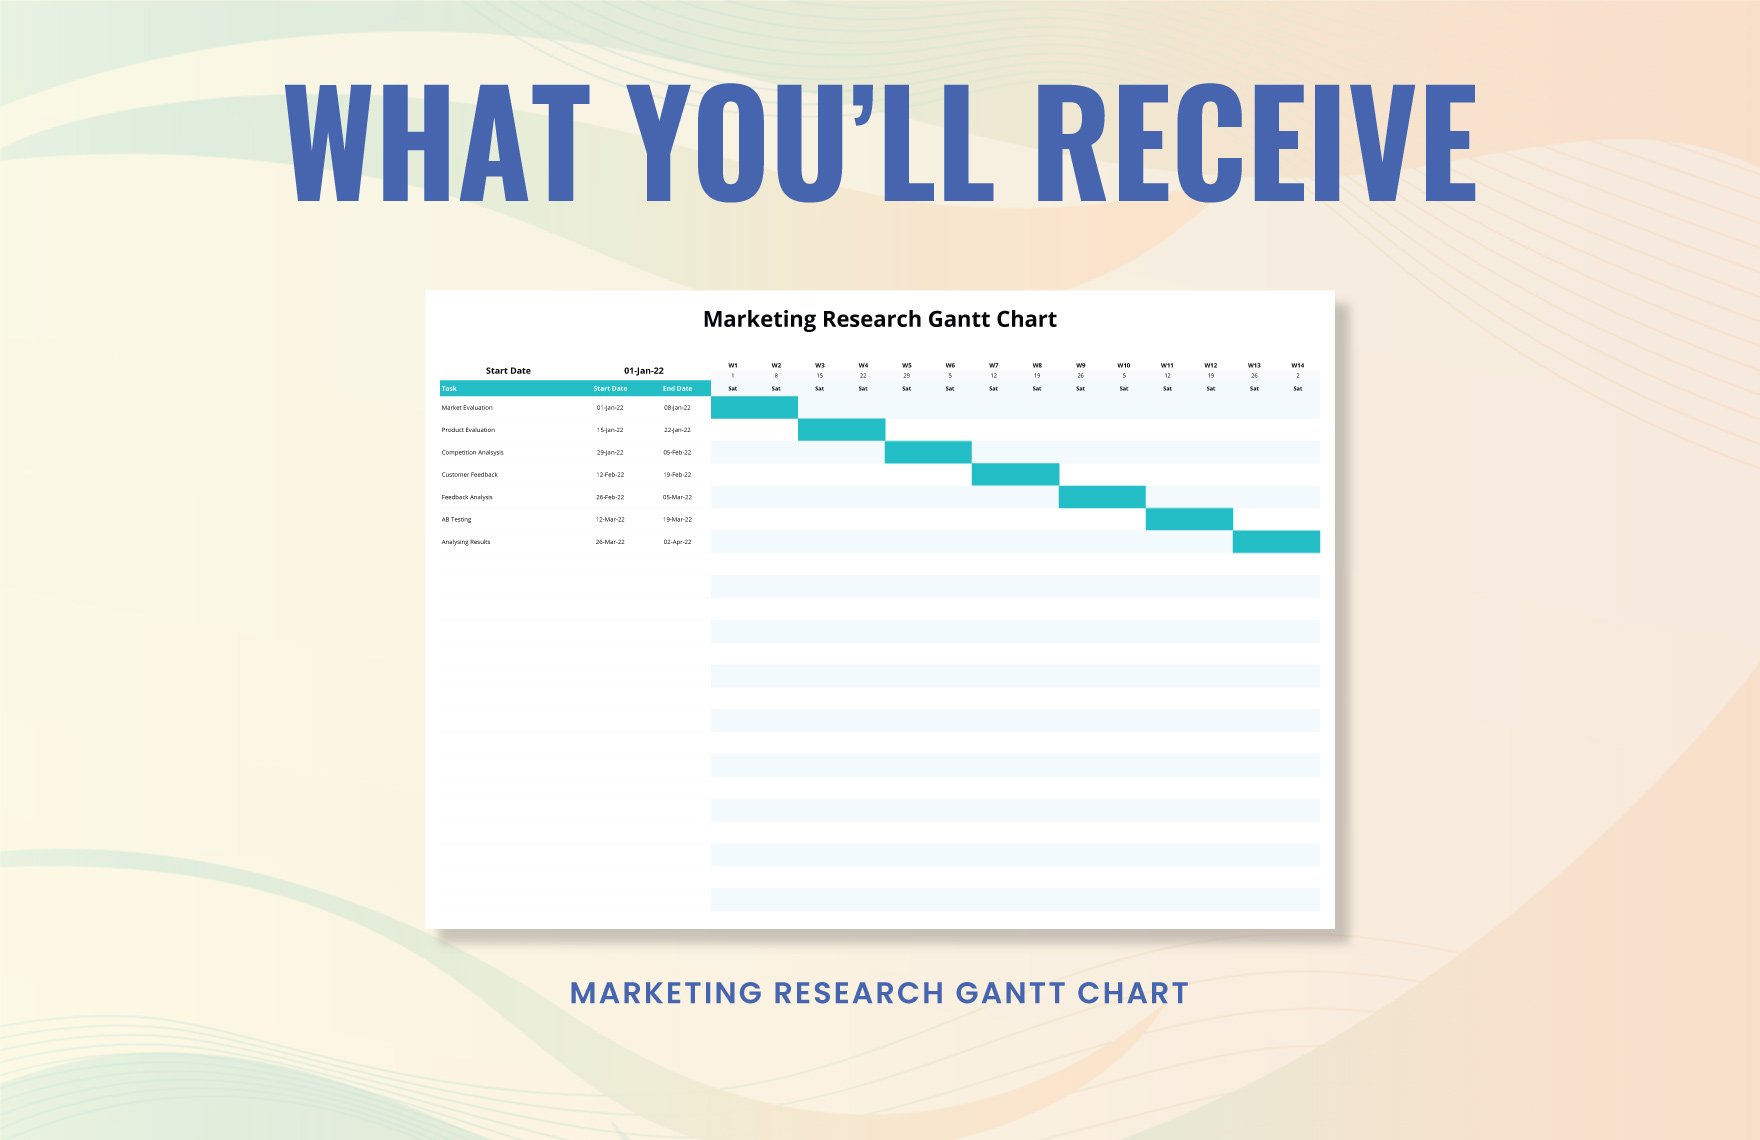 Marketing Research Gantt Chart Template